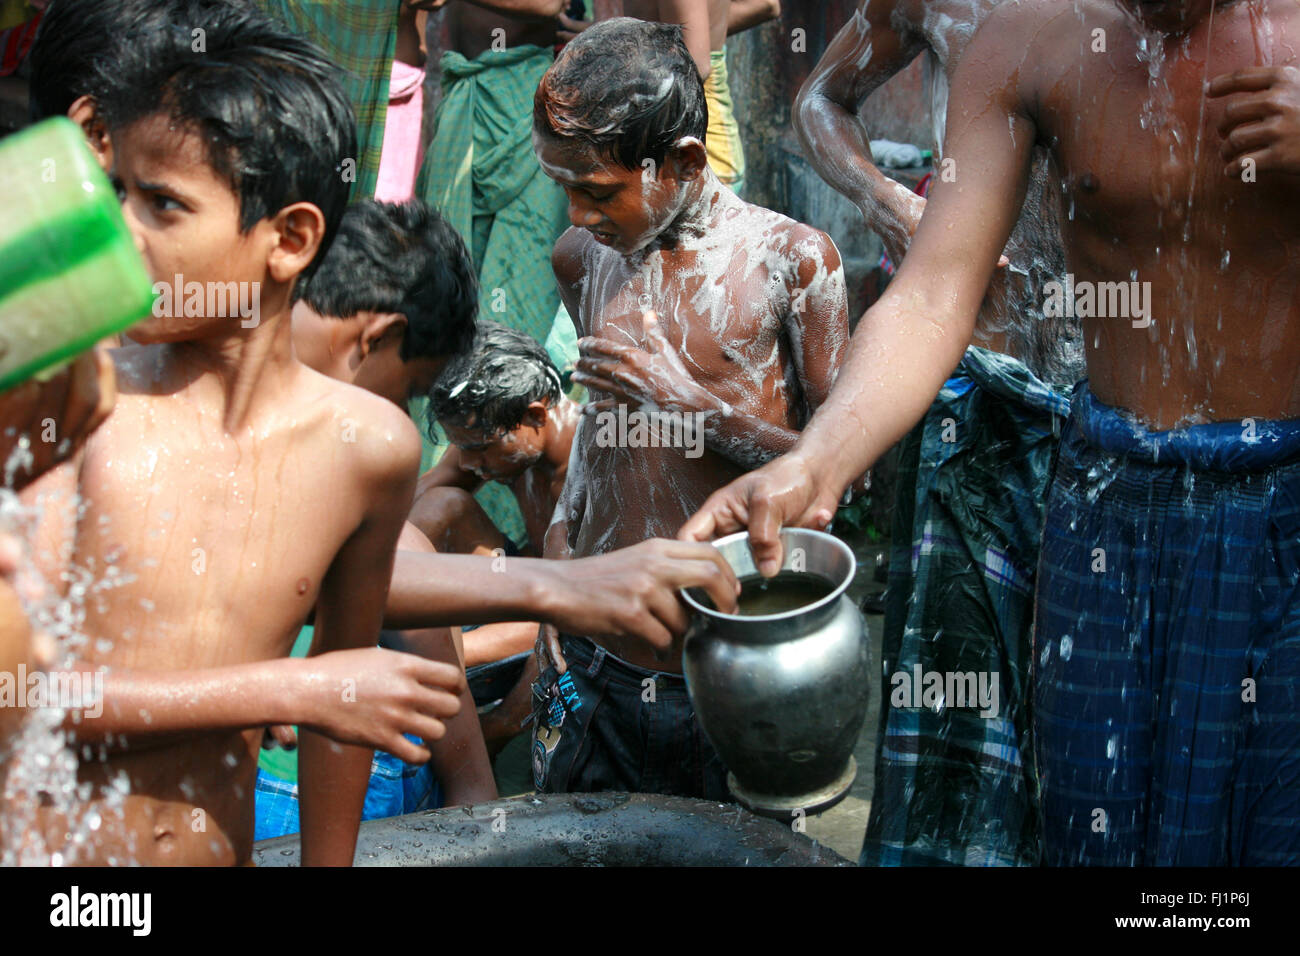 Kinder waschen sich in den frühen Morgen im öffentlichen Duschen in der  Mitte von Kolkata, Indien Stockfotografie - Alamy